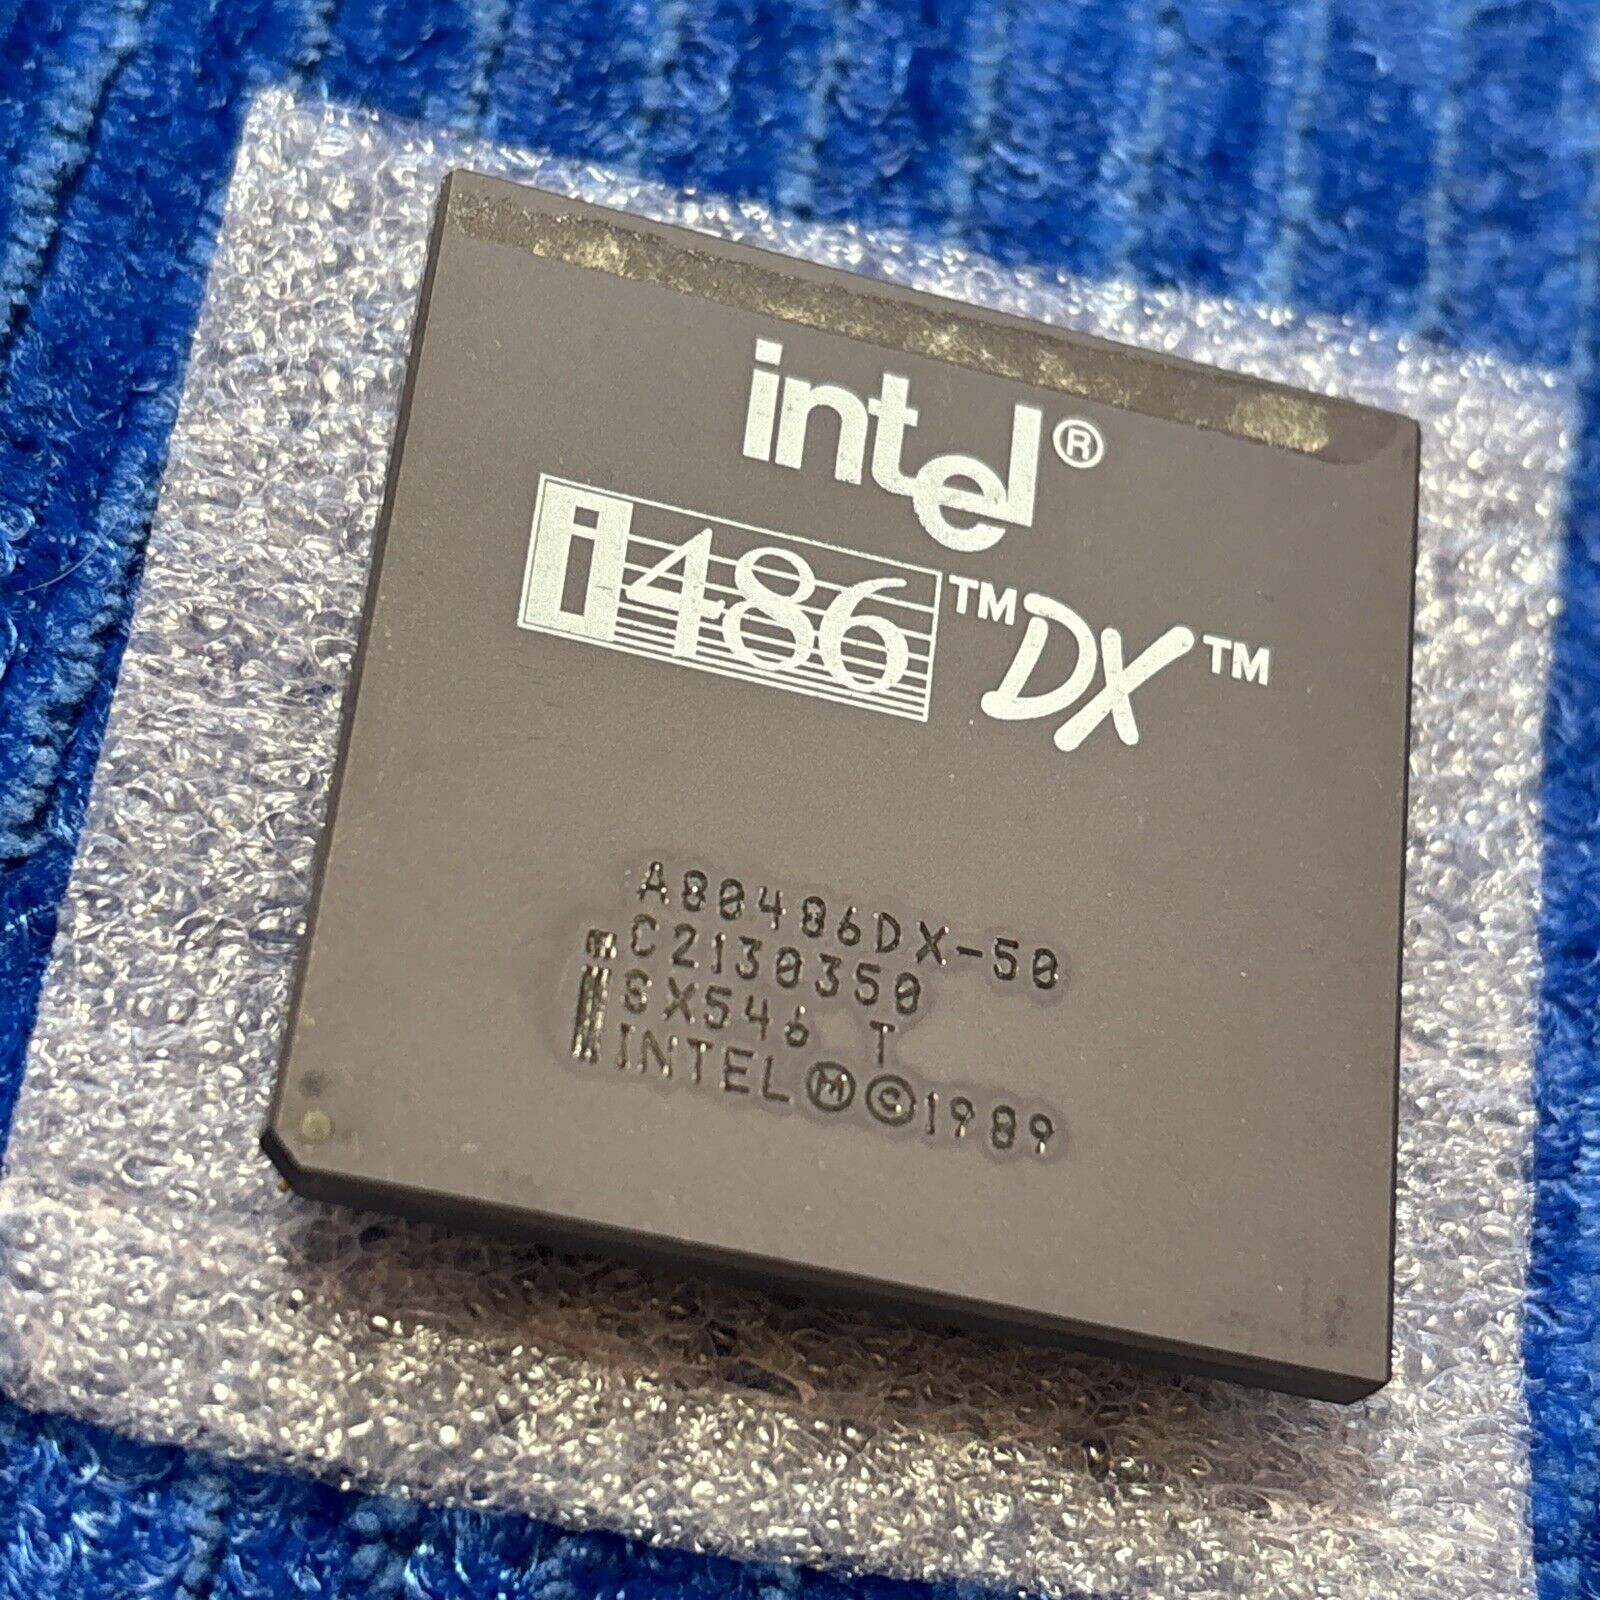 Intel i486DX A80486DX-50 SX546 i486DX-50 MHZ - Rare Processor CPU 486